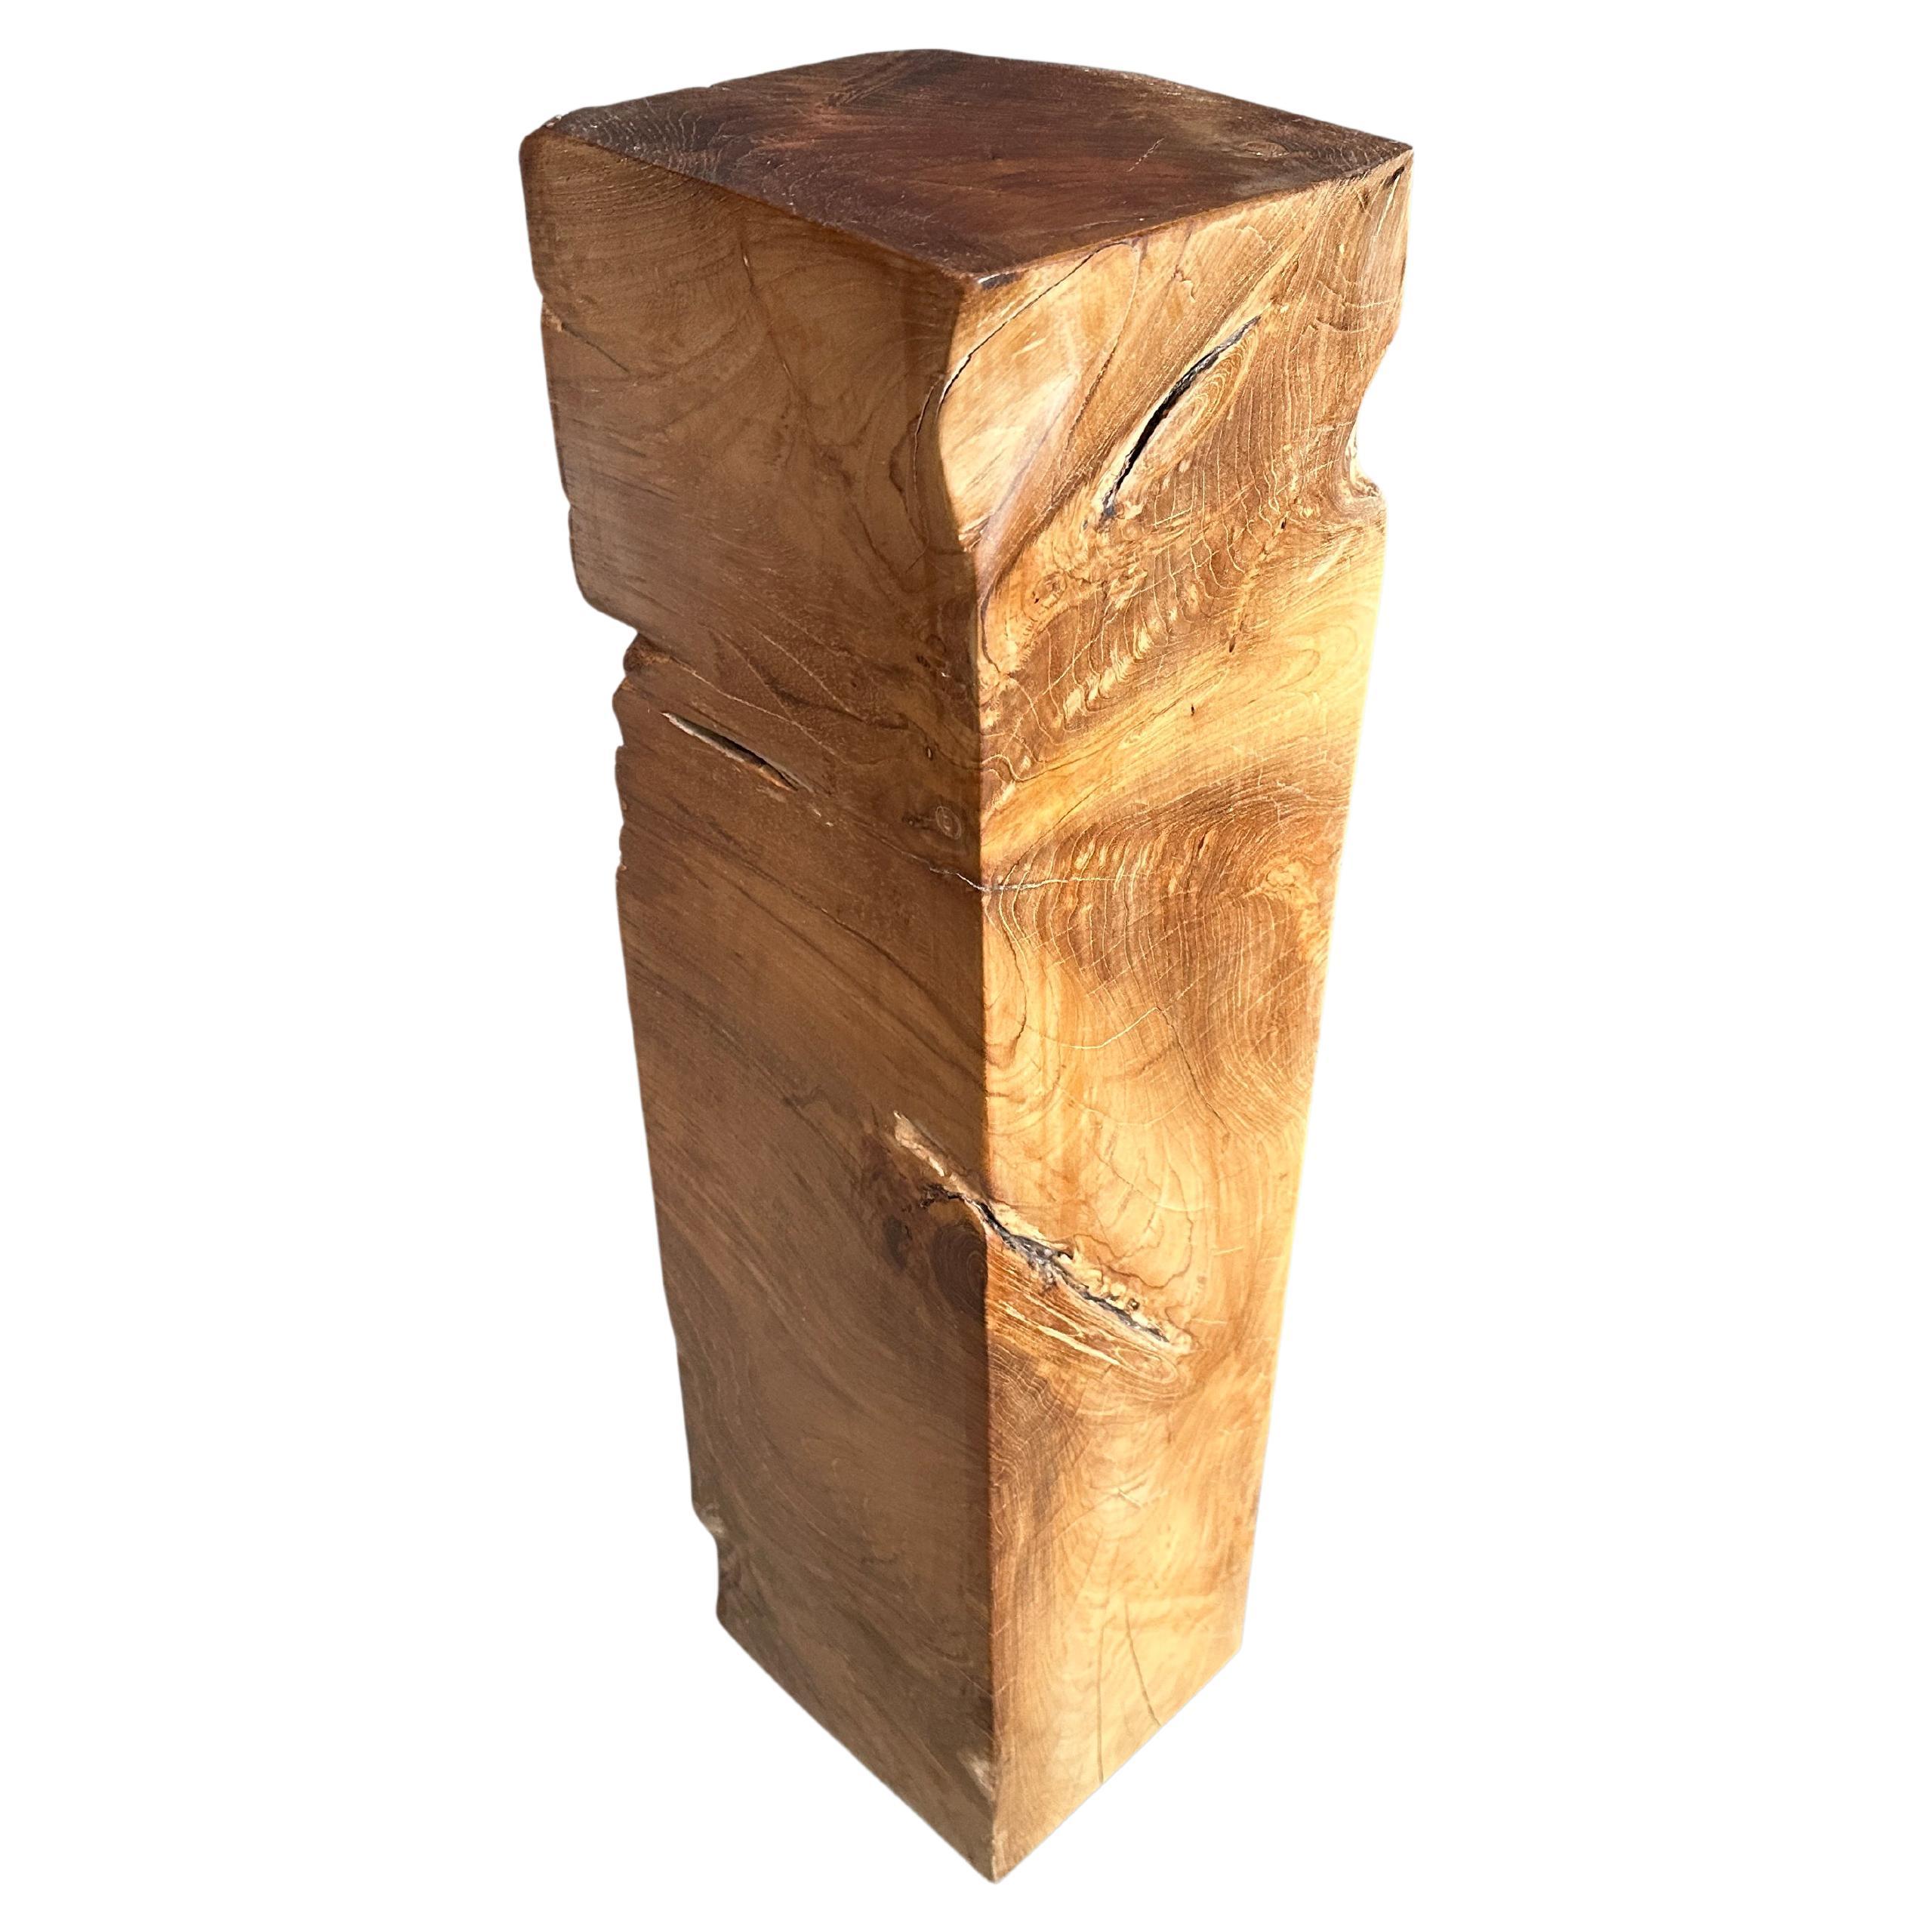 Andrianna Shamaris Minimalist Teak Wood Pedestal or Side Table